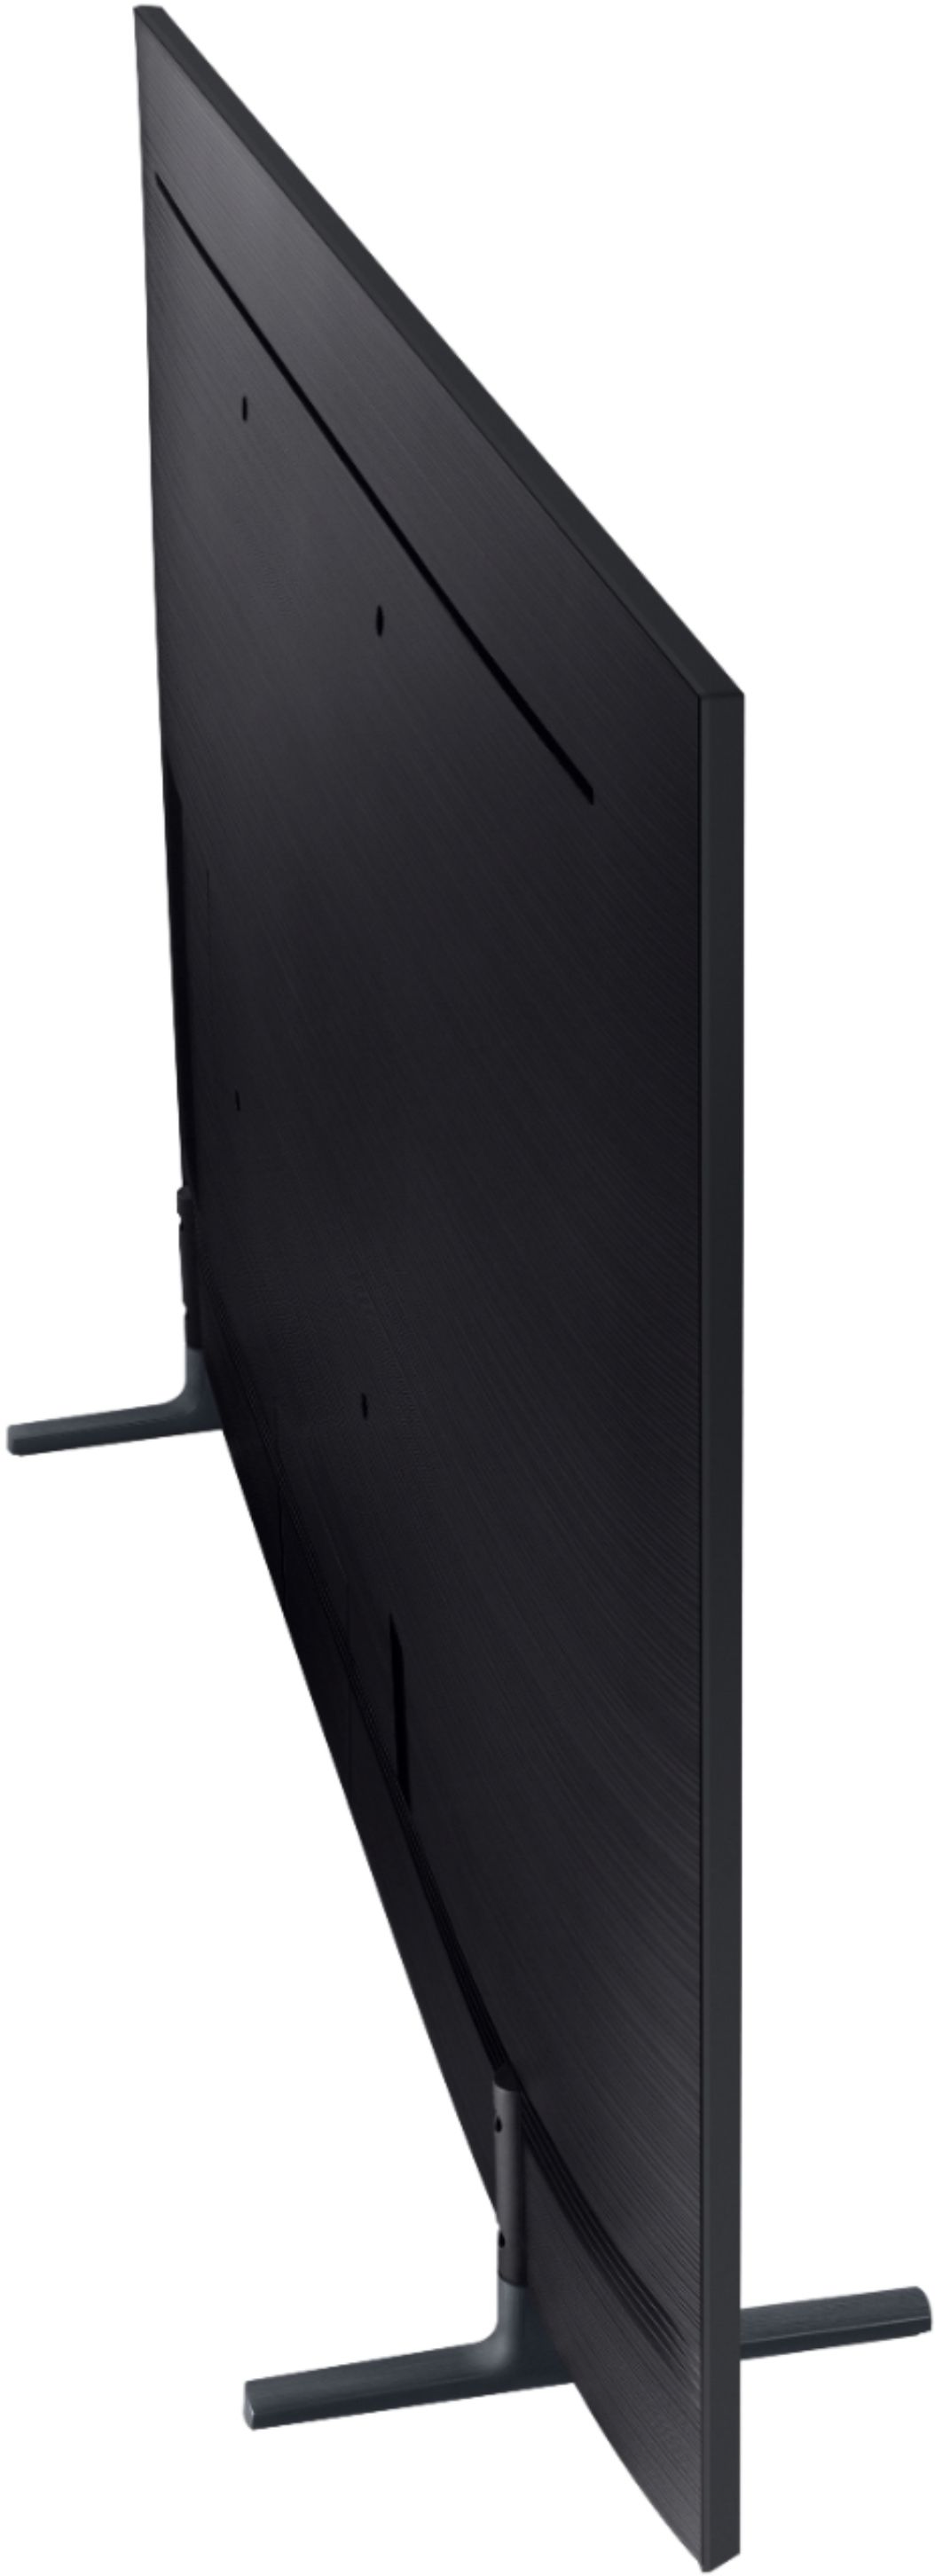 Best Buy: Samsung 75 Class 9 Series LED 4K UHD Smart Tizen TV  UN75RU9000FXZA